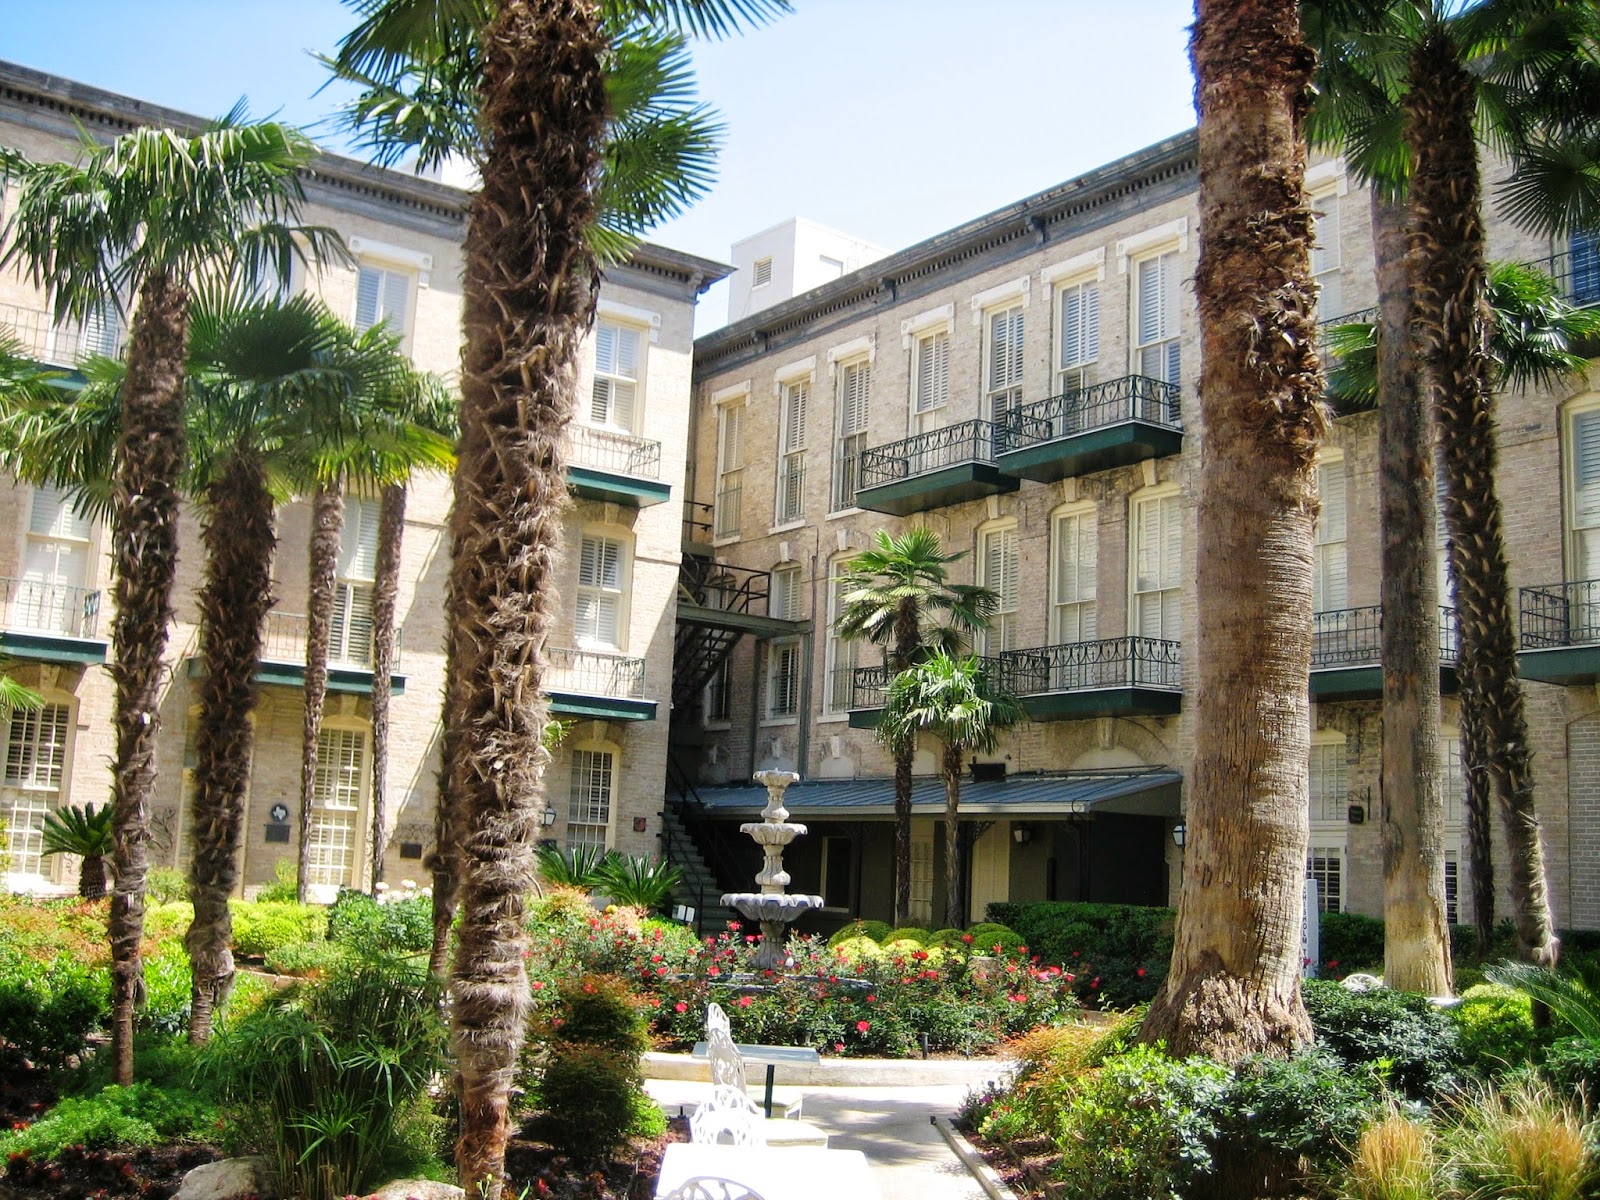 ABT UNK: Those Places Thursday: San Antonio's Historic Menger Hotel